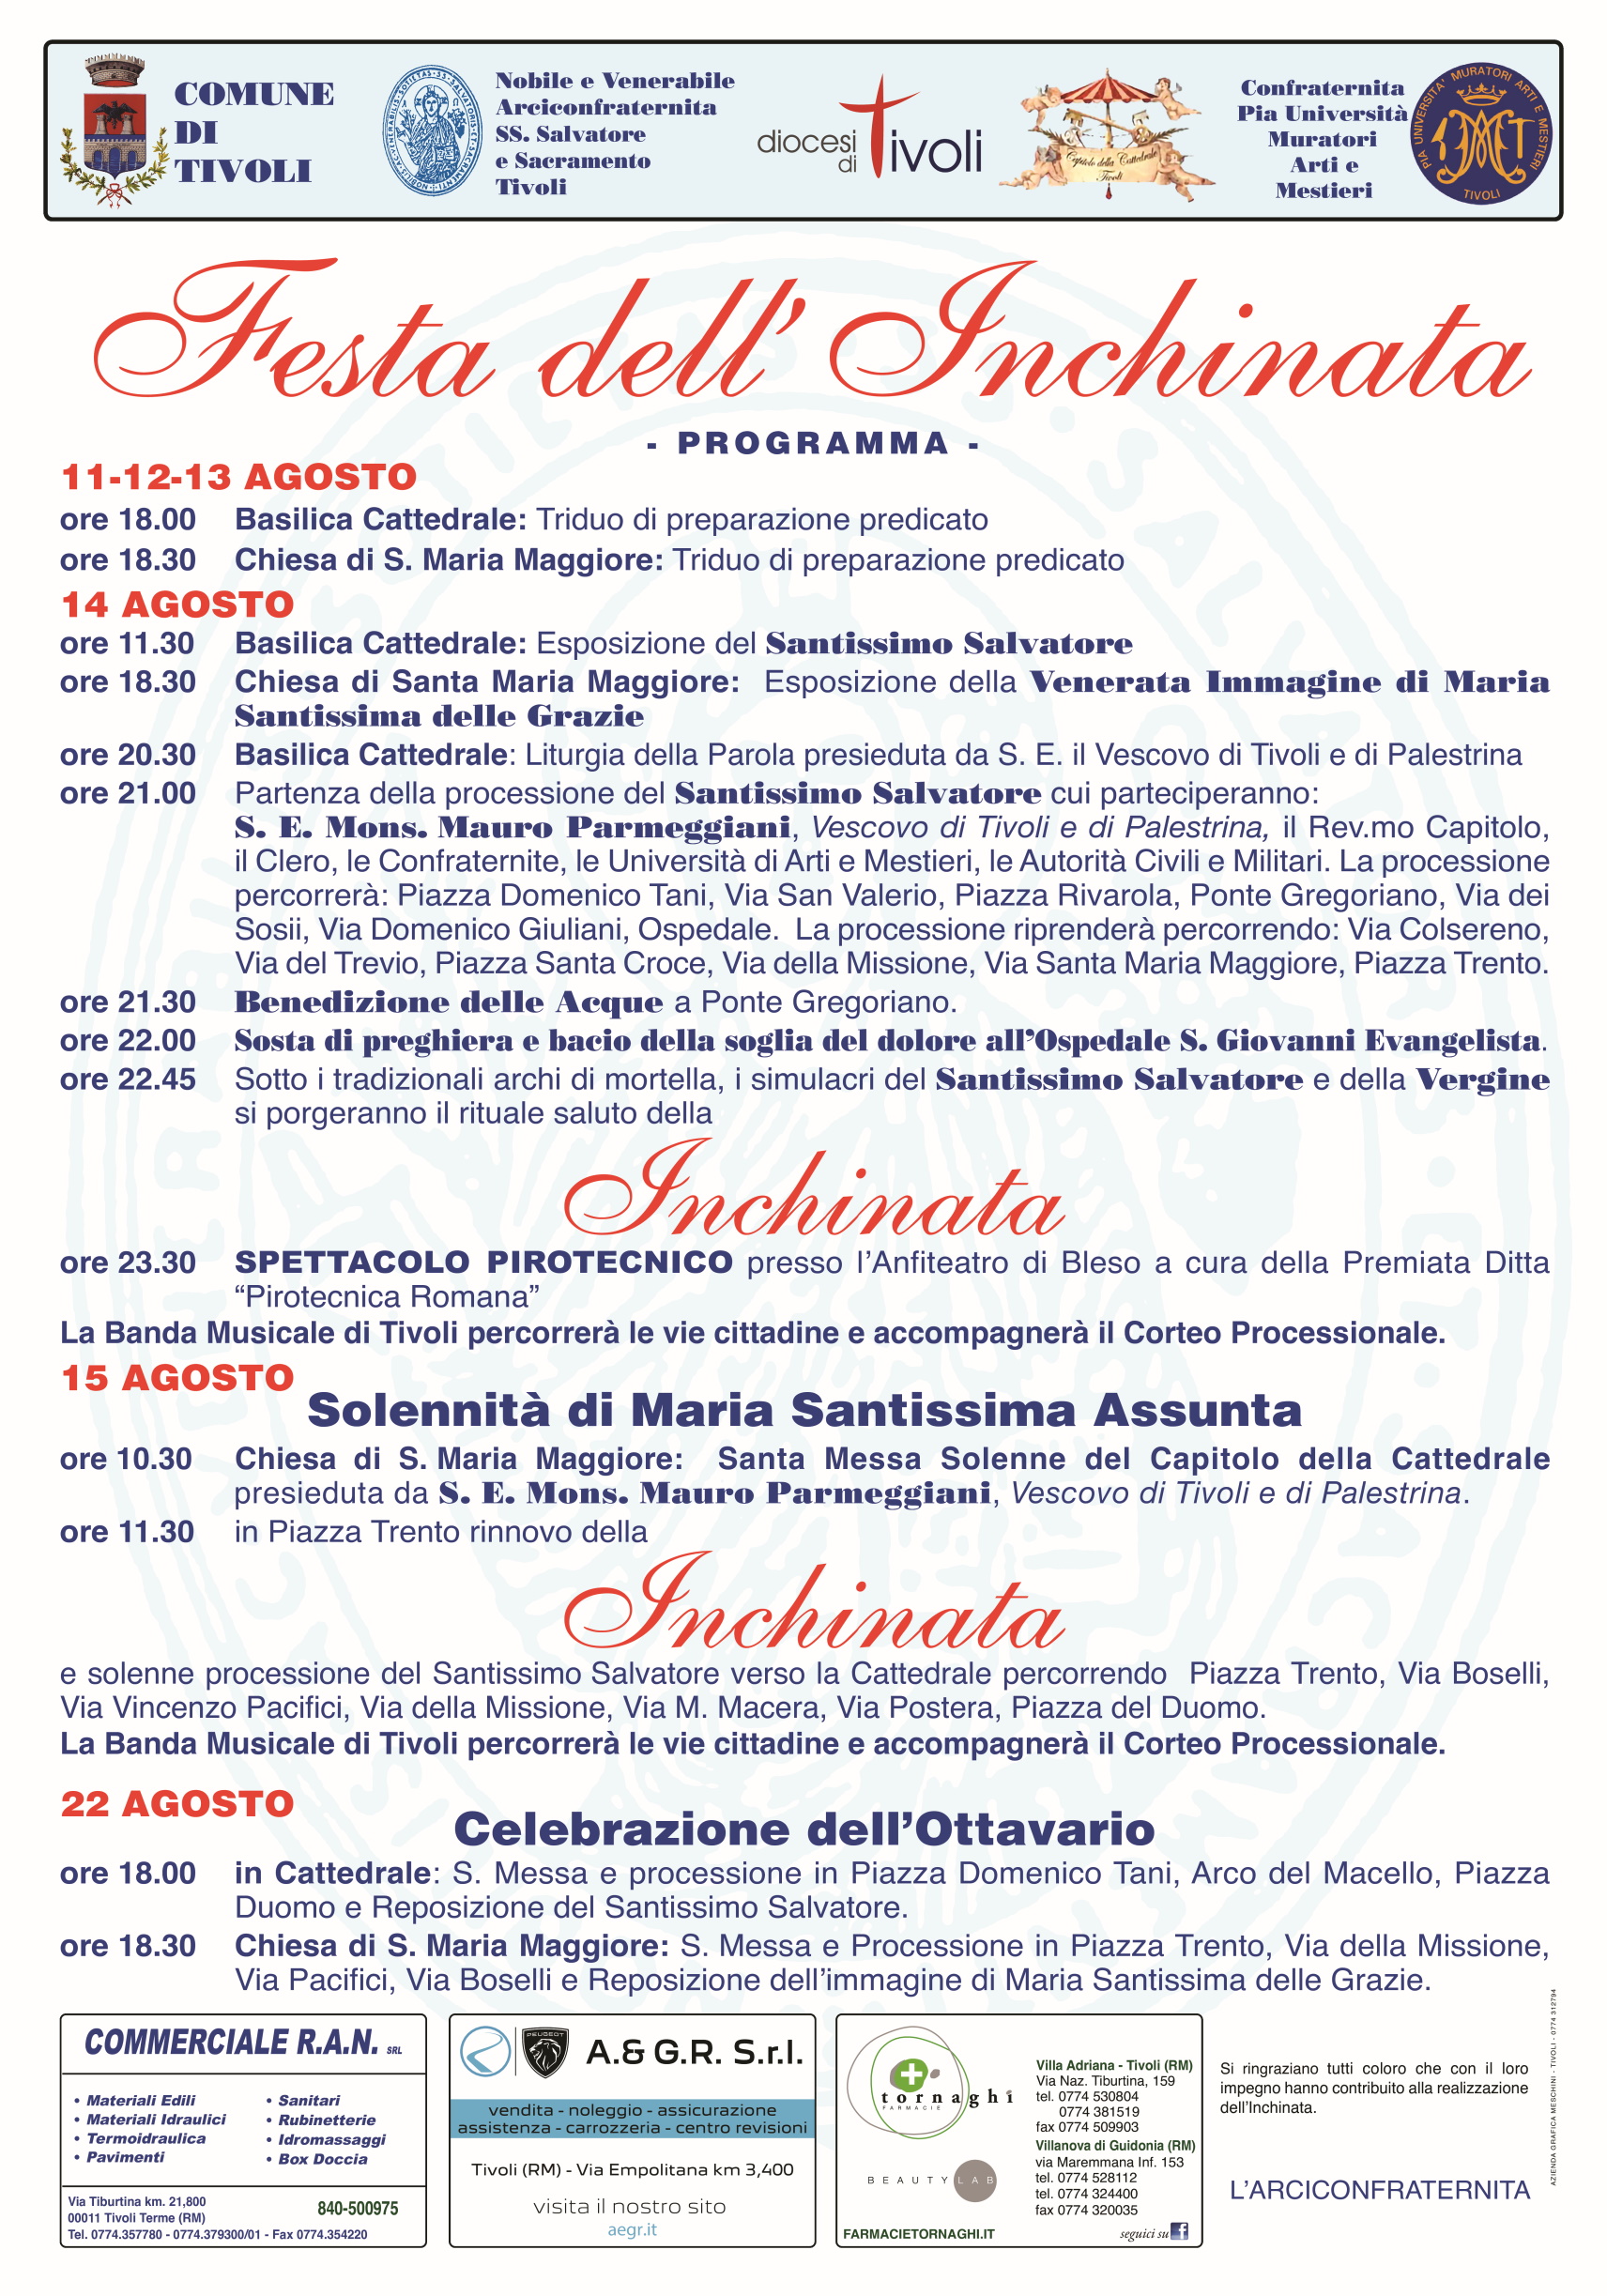 Festa dell’Inchinata 2023. Processione storica la sera del 14 agosto e spettacolo pirotecnico dalla Rocca Pia. Il Programma completo